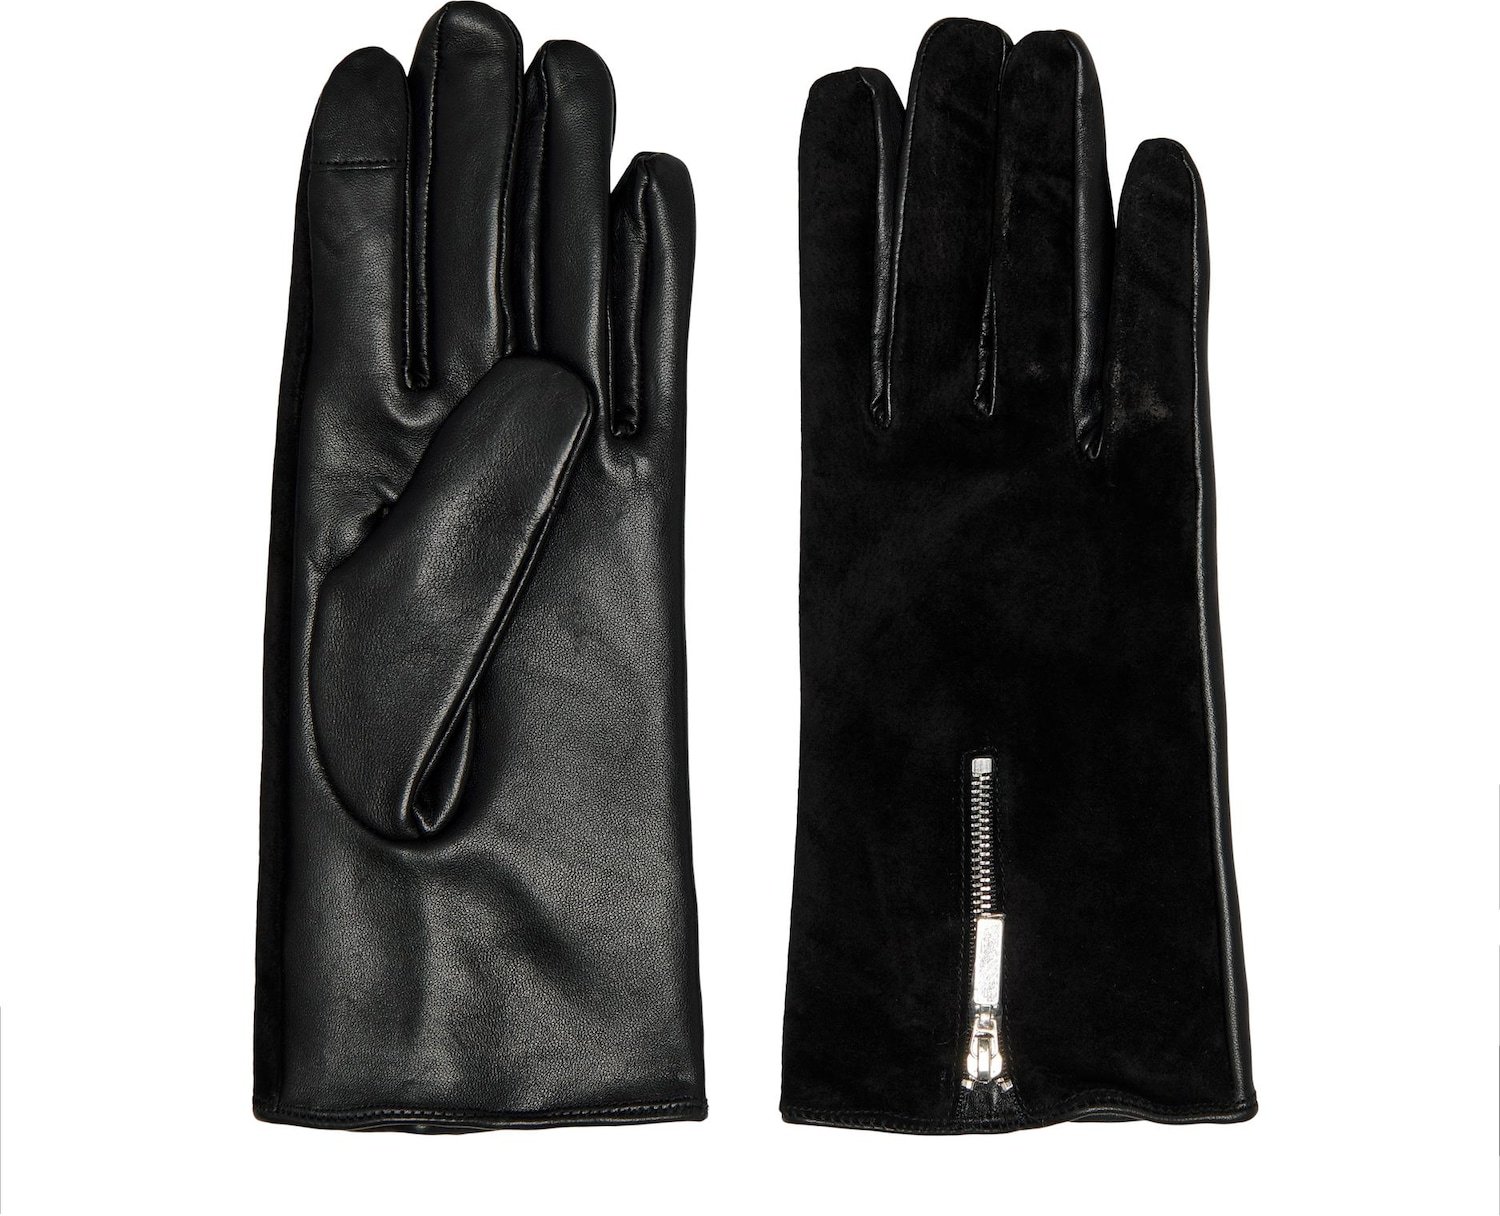 ONLY Prstové rukavice černá